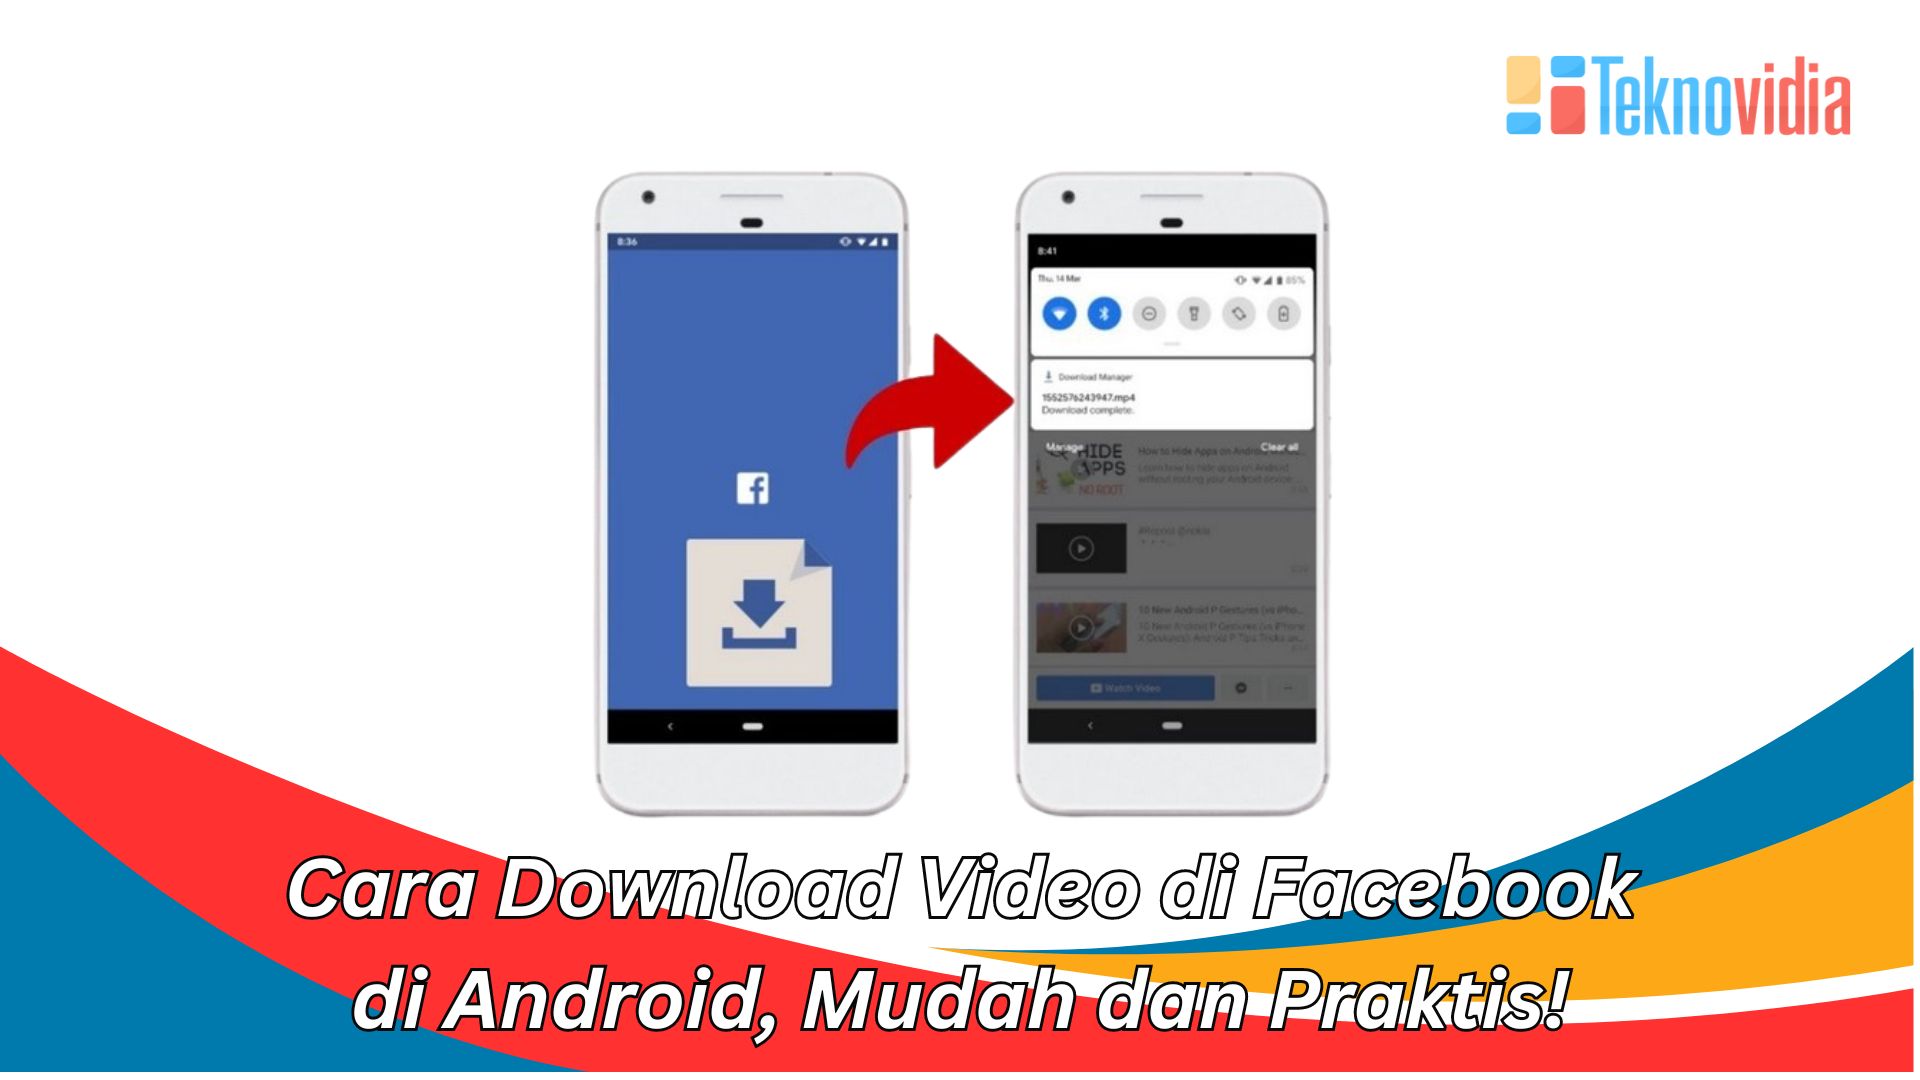 Cara Download Video di Facebook di Android, Mudah dan Praktis!